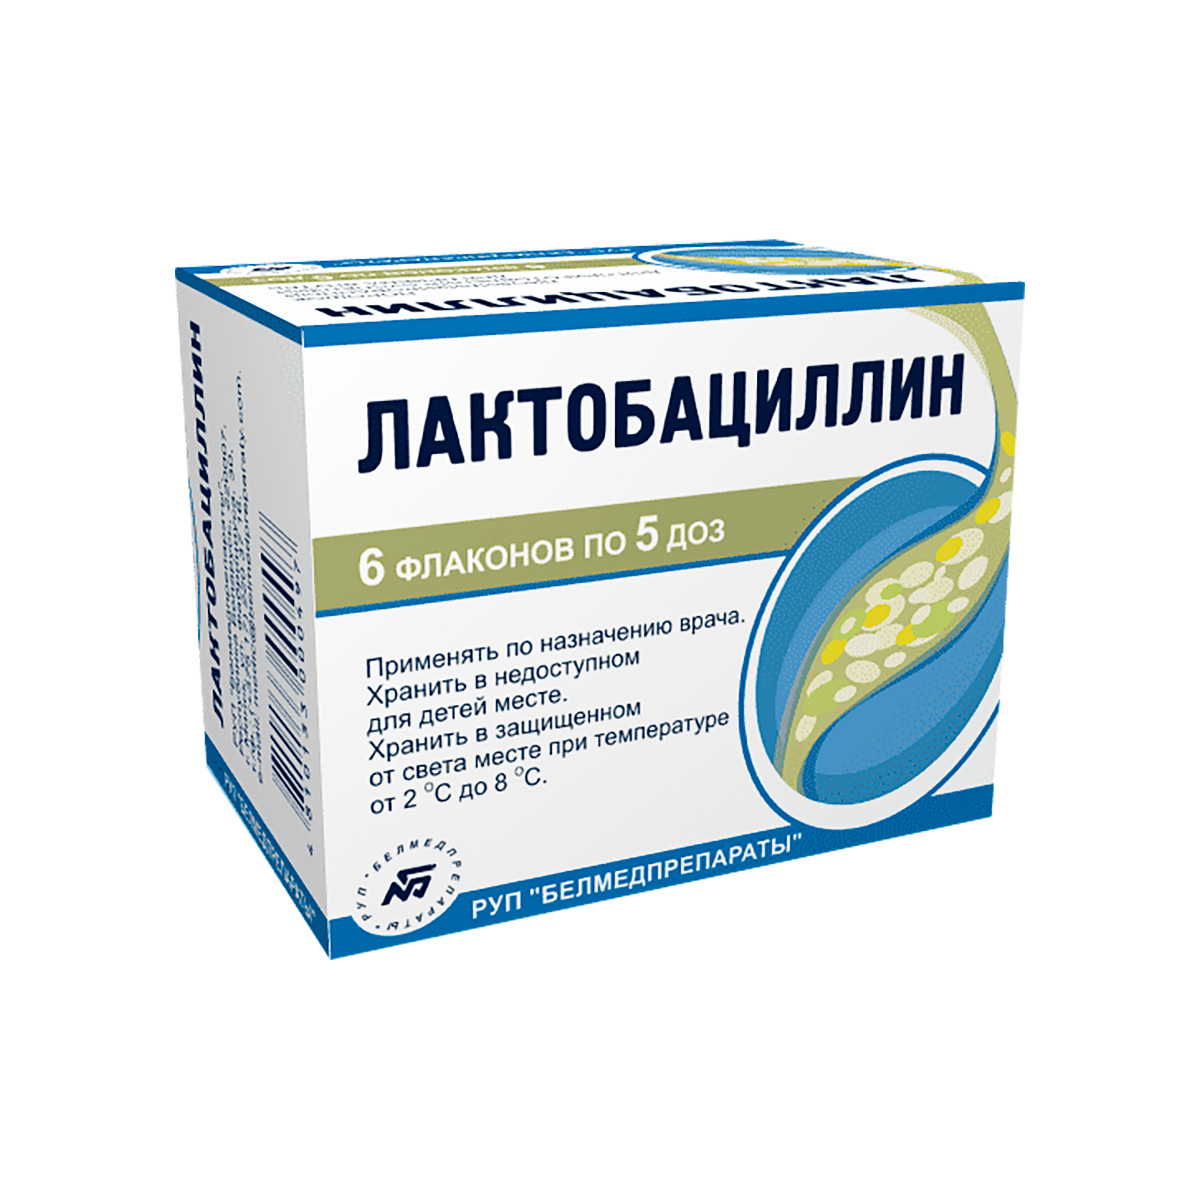 Лактобациллин 5 доз лиофилизат для приготовления суспензии флакон 6 шт